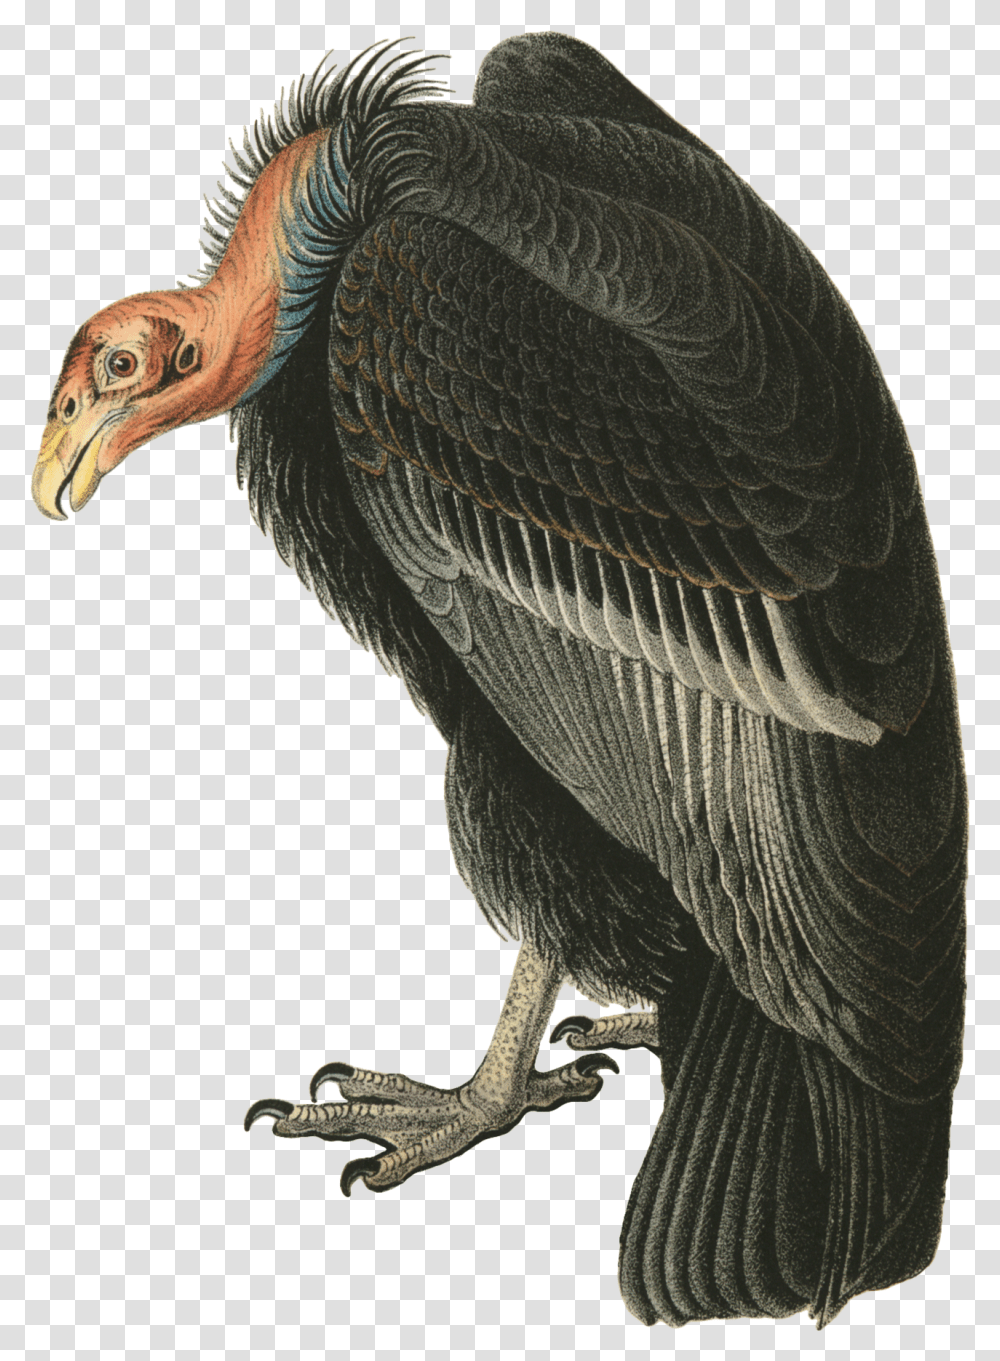 Vulture, Bird, Animal, Condor Transparent Png